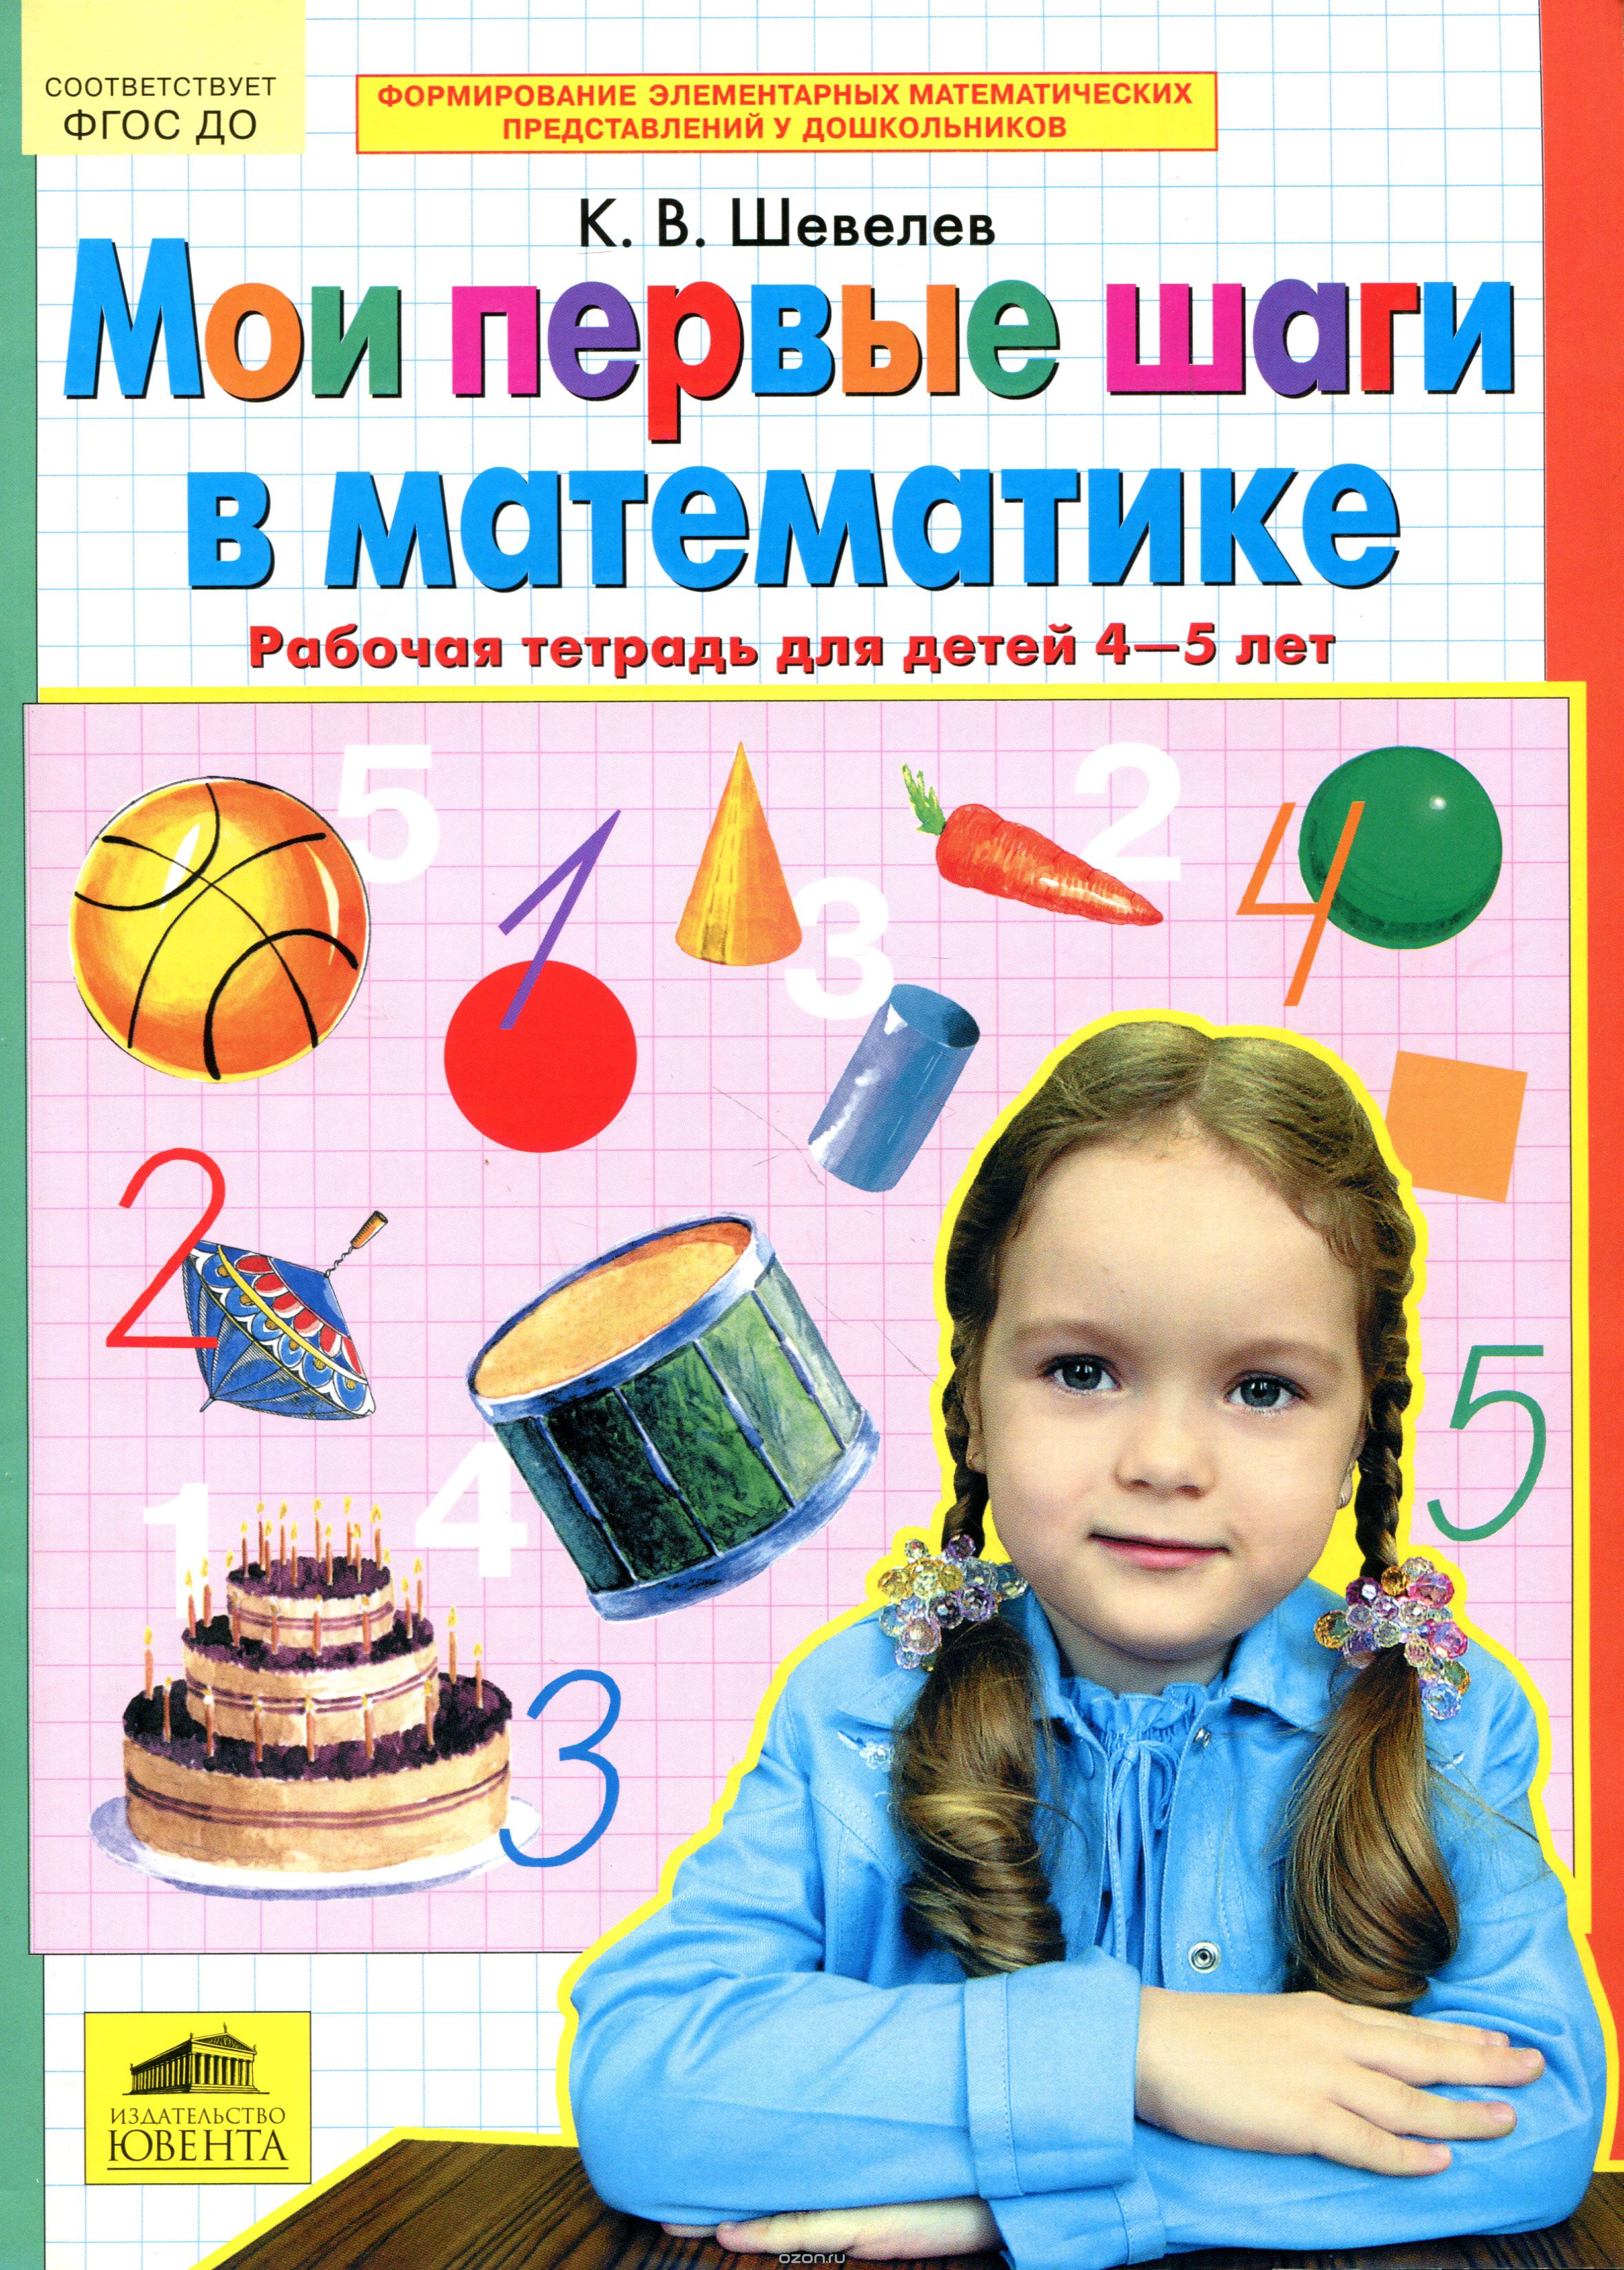 Скачать книгу "Мои первые шаги в математике. Рабочая тетрадь для детей 4-5 лет, К. В. Шевелев"